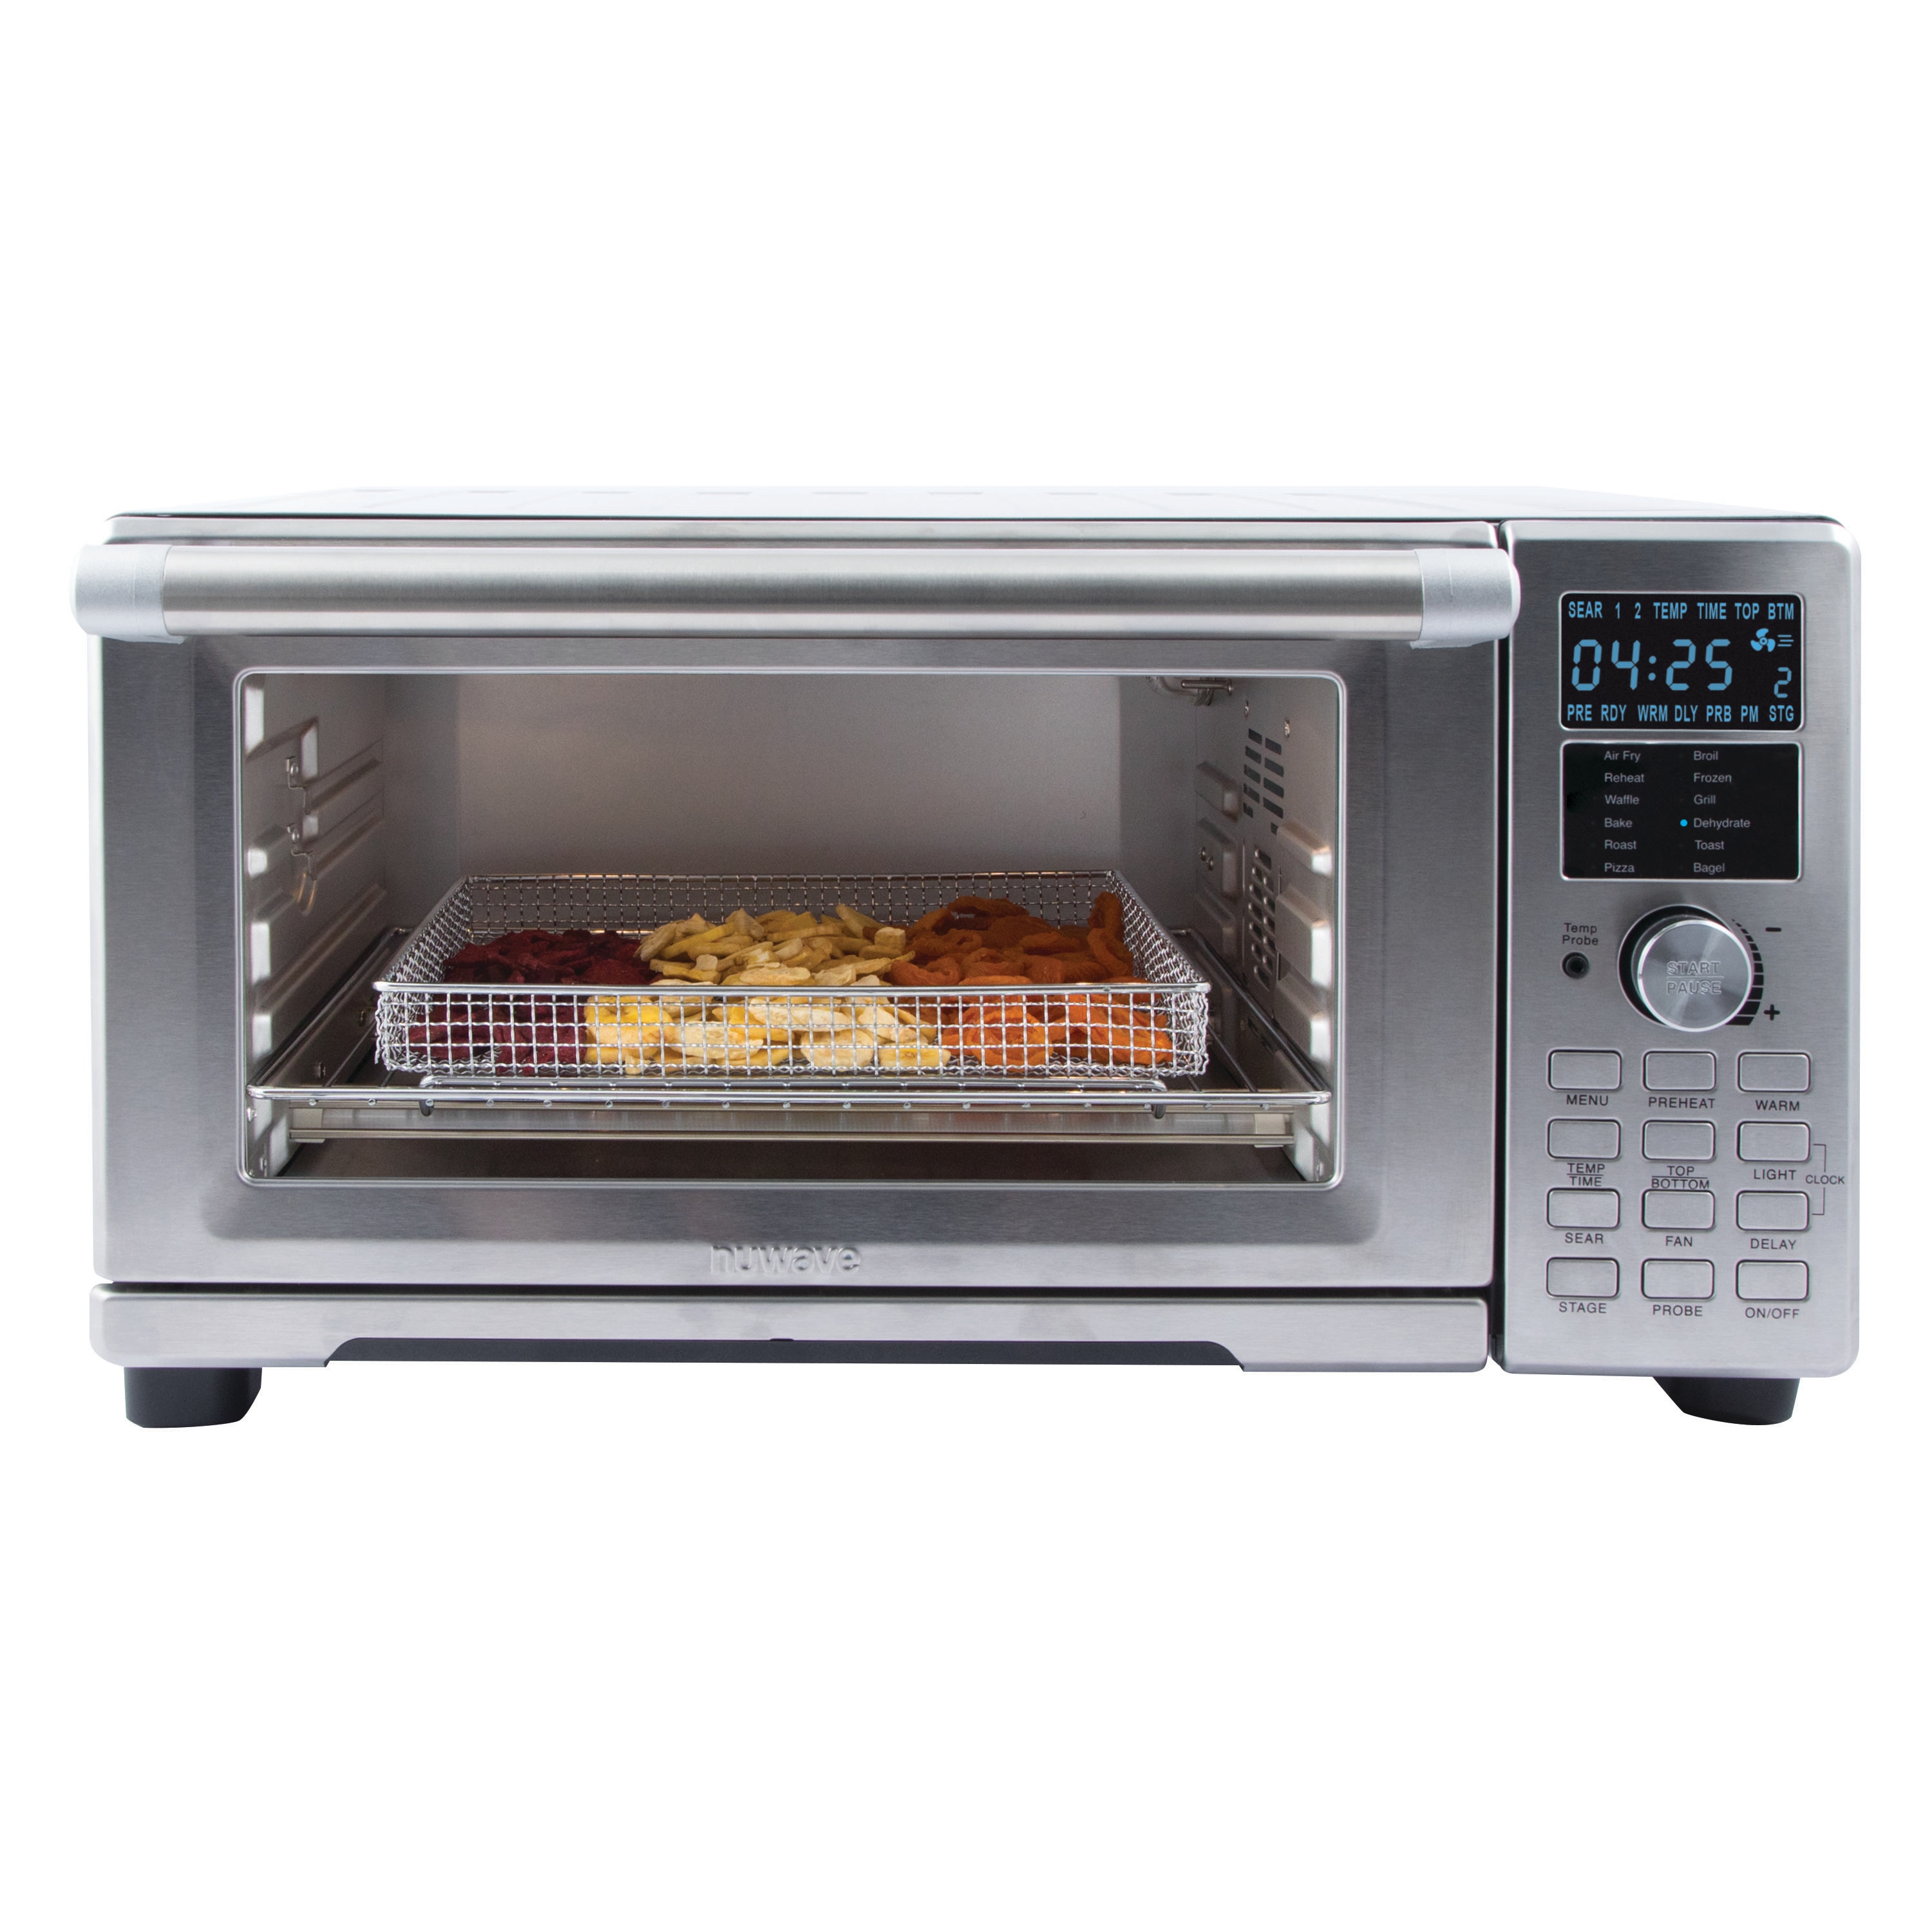 NUWAVE Bravo XL Air Fryer, Toaster, Smart Oven